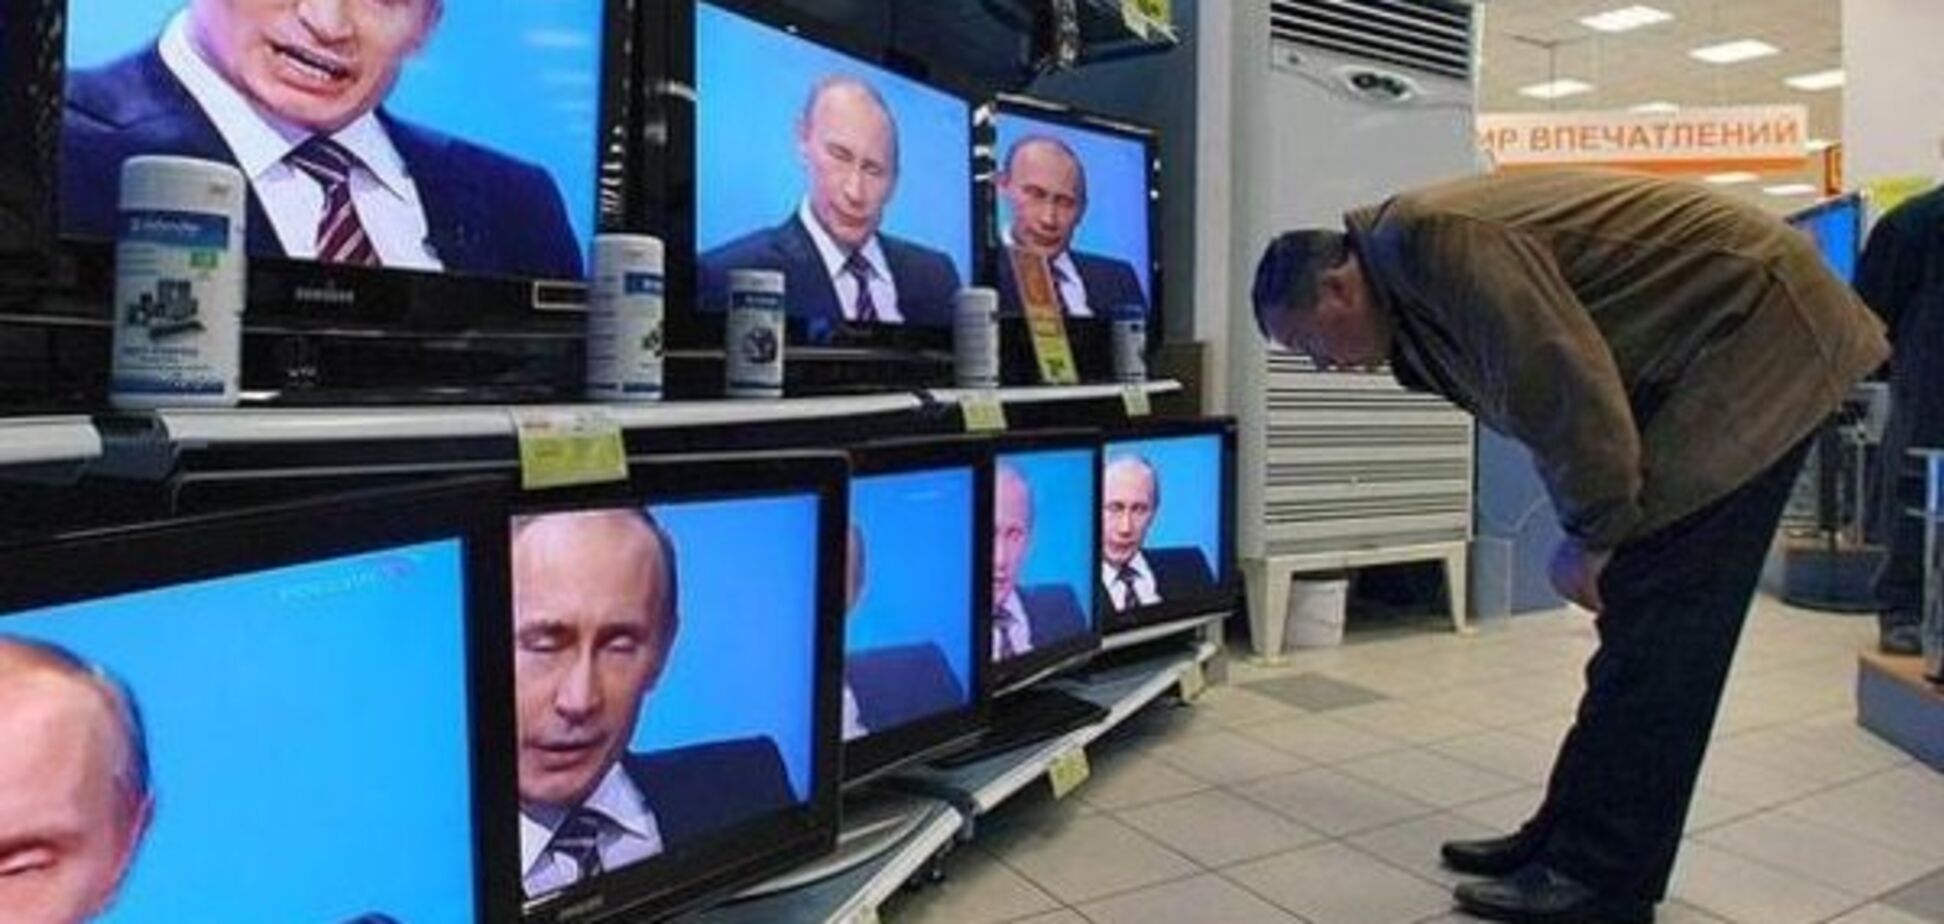 Росіяни масово перестали вірити новинам на ТБ - дослідження